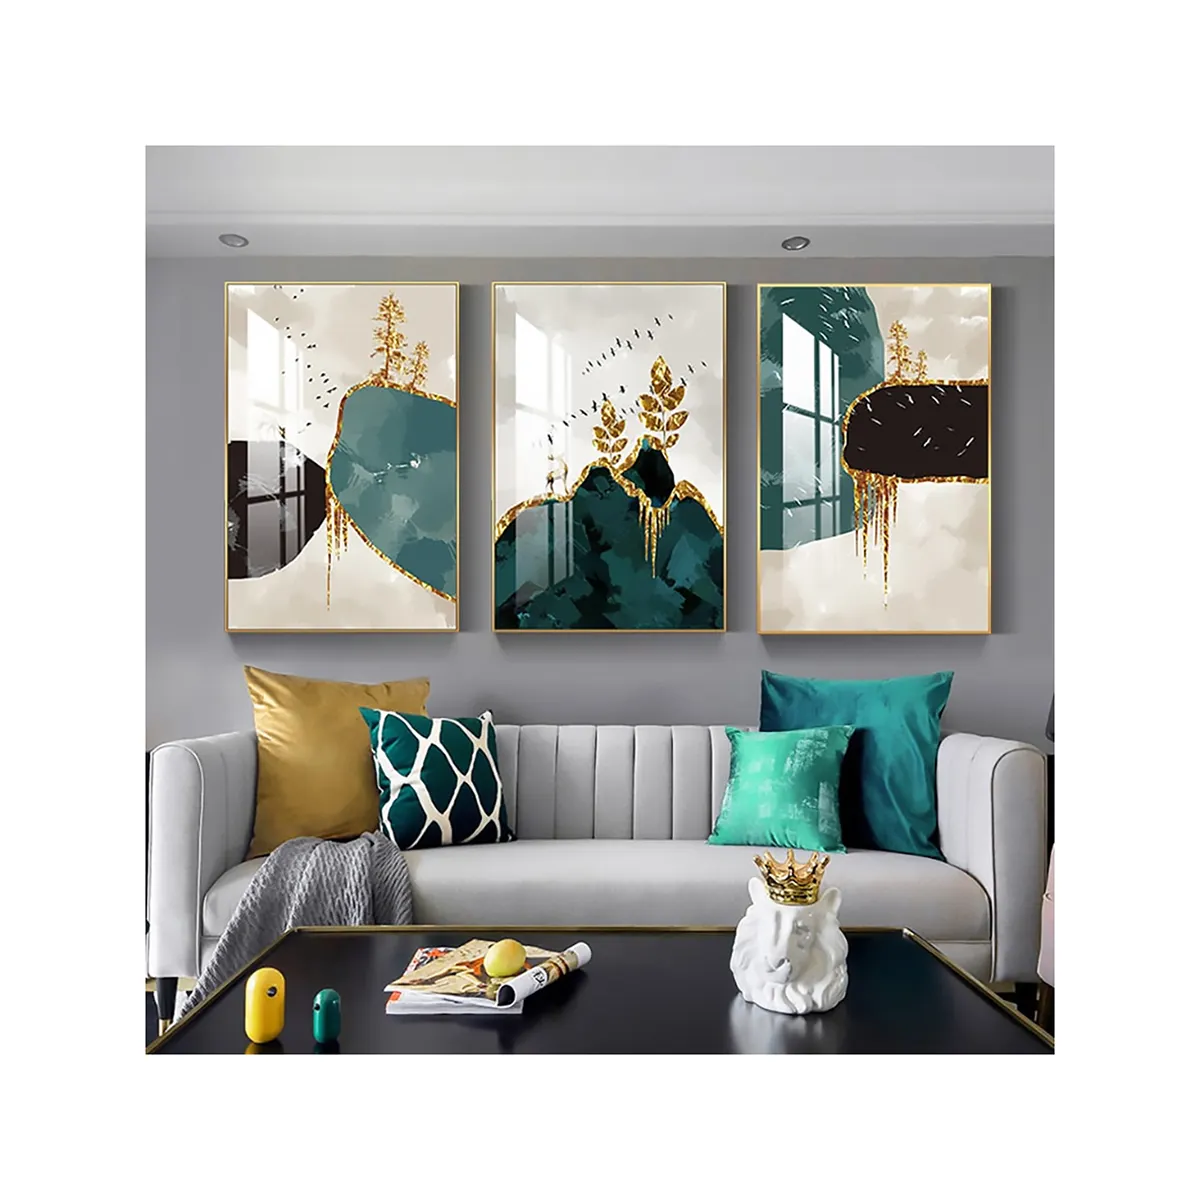 صور جدارية بأشكال شمالية ومناظر طبيعية فنون فنية مطبوعات على قماش الكانفاس صور غزلان ذهبية ملائمة لتزيين غرفة المعيشة الفاخرة ديكور منزلي حديث